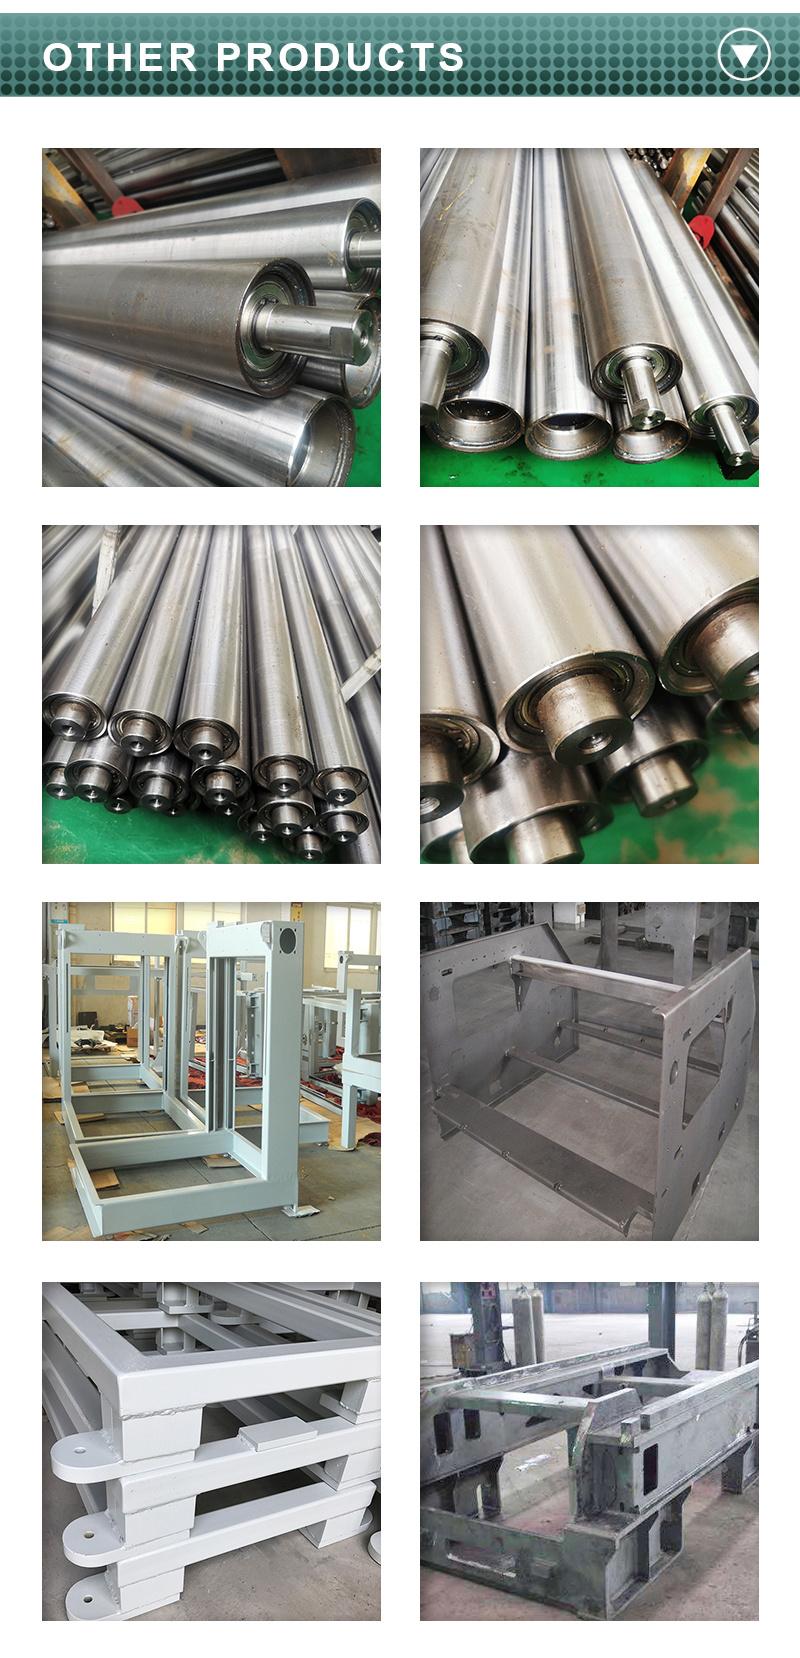 Custom Anodized Precision Aluminum CNC Machining Parts